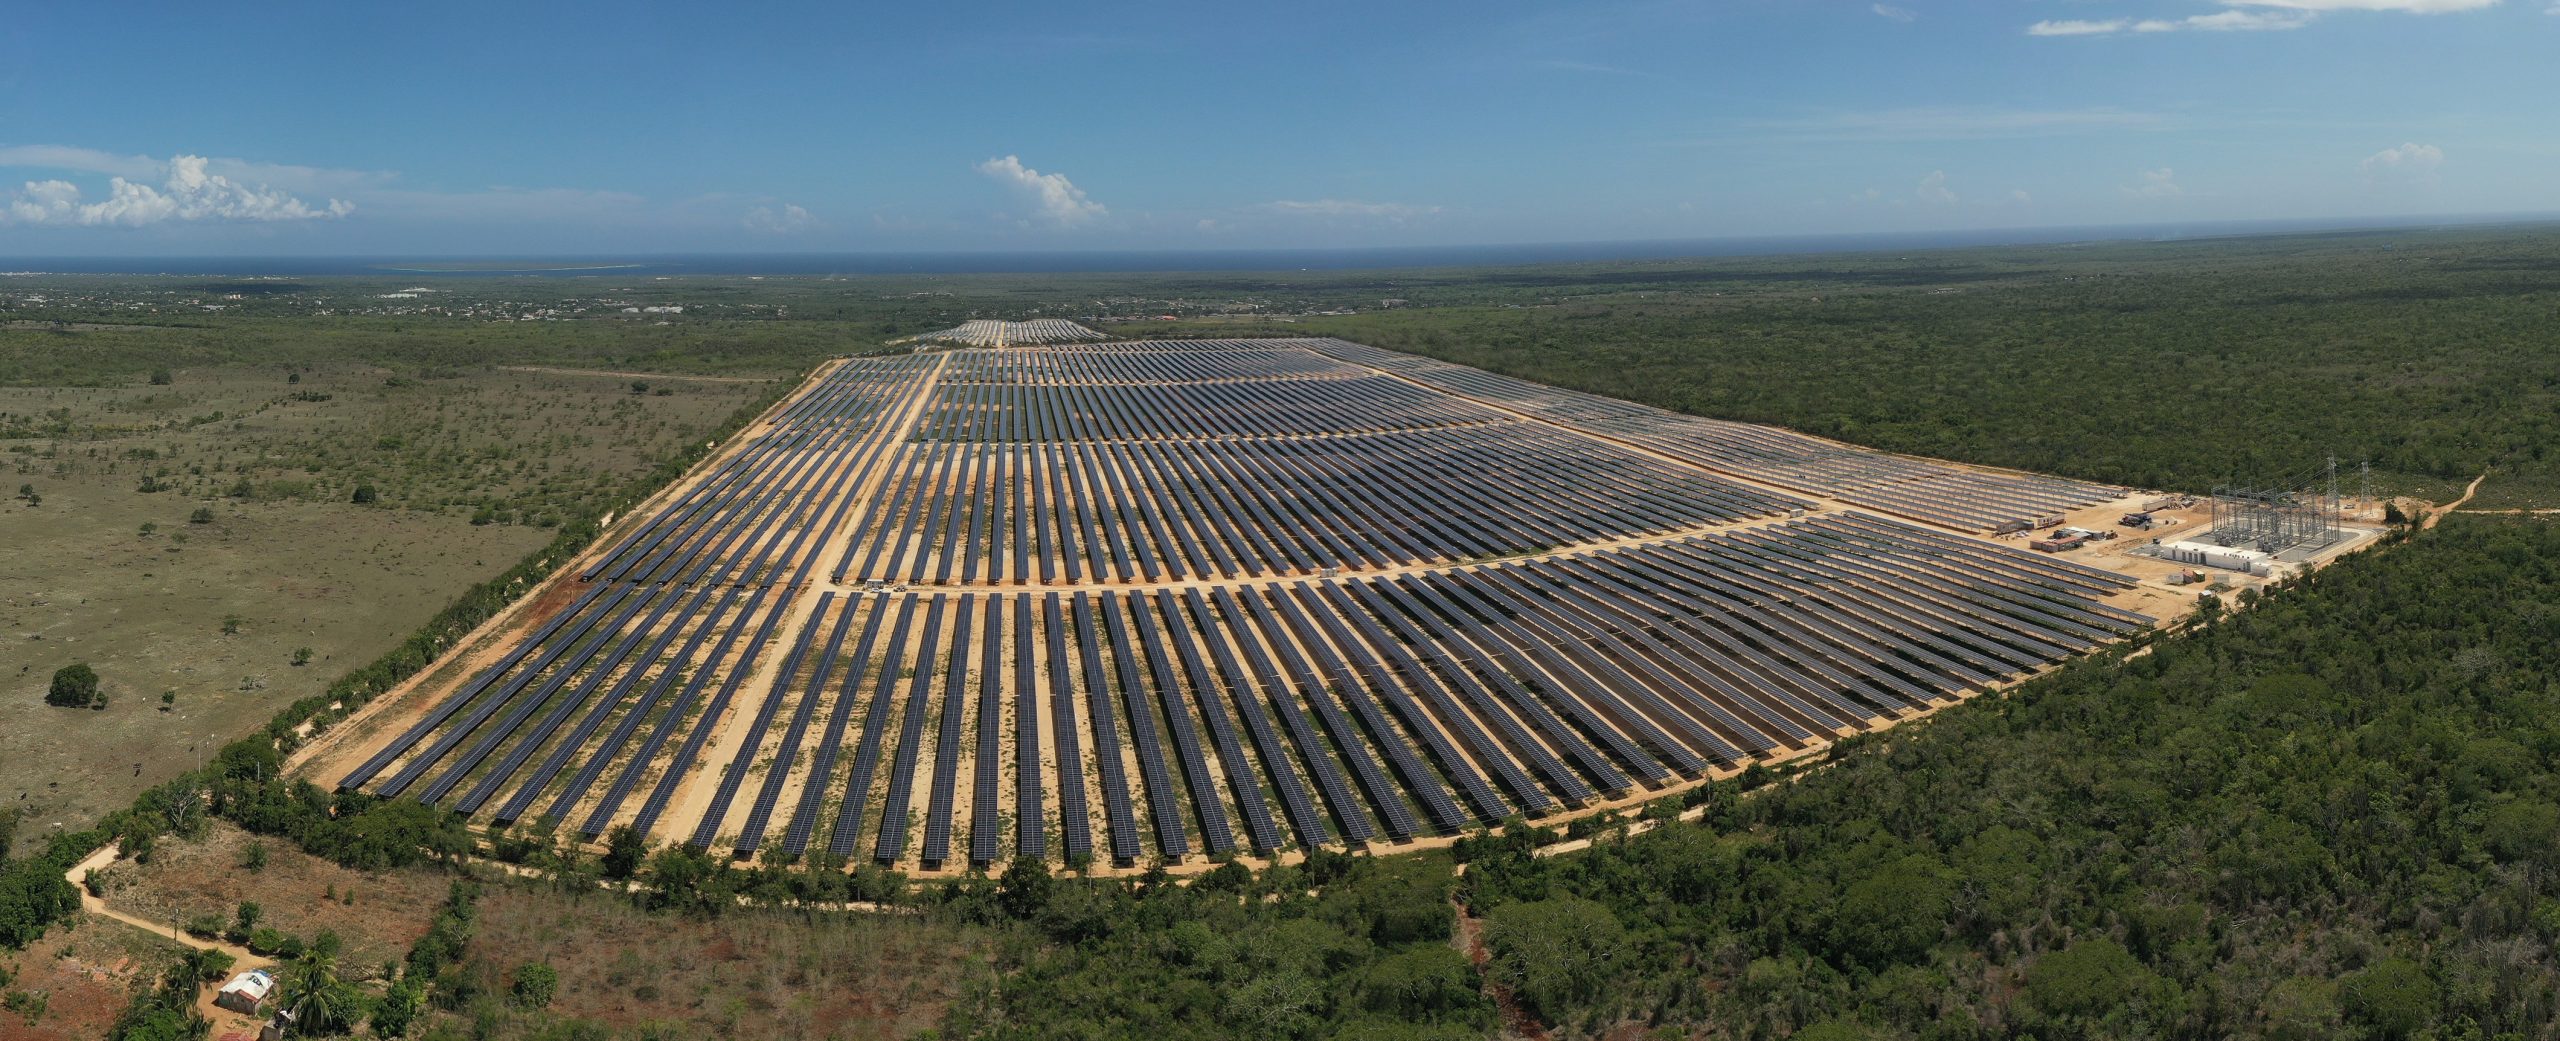 Ecoener ingresará más de 250 millones de dólares con la puesta en operación de 97 MW en República Dominicana